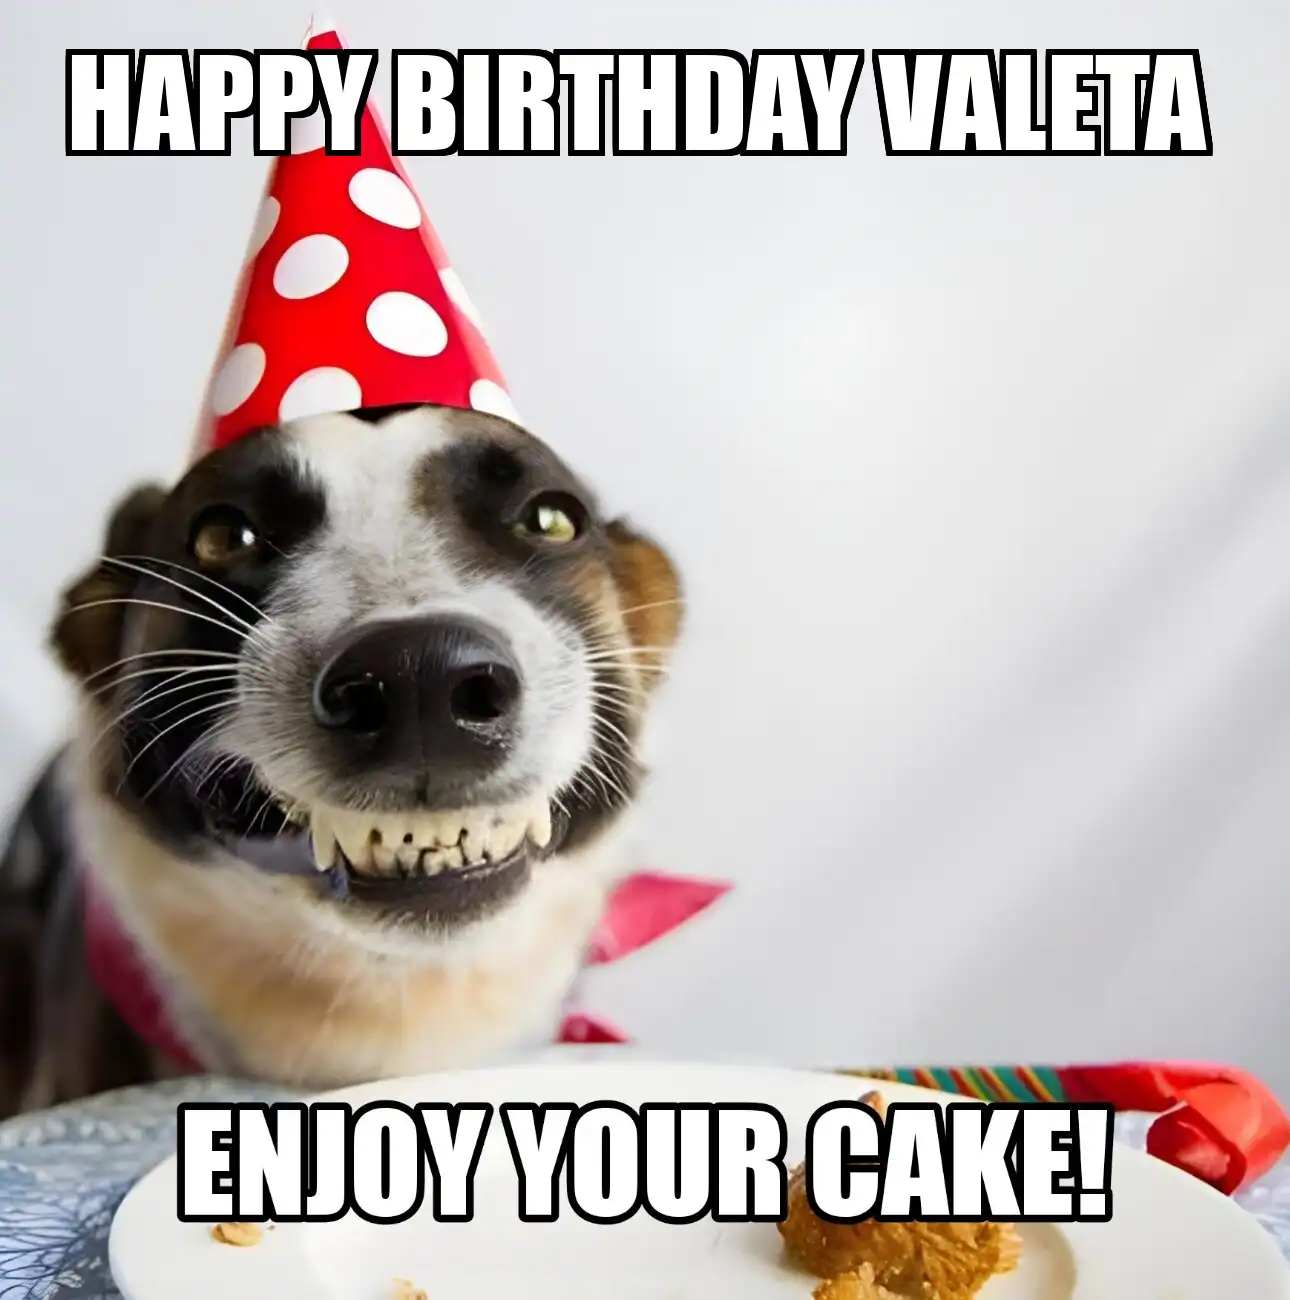 Happy Birthday Valeta Enjoy Your Cake Dog Meme